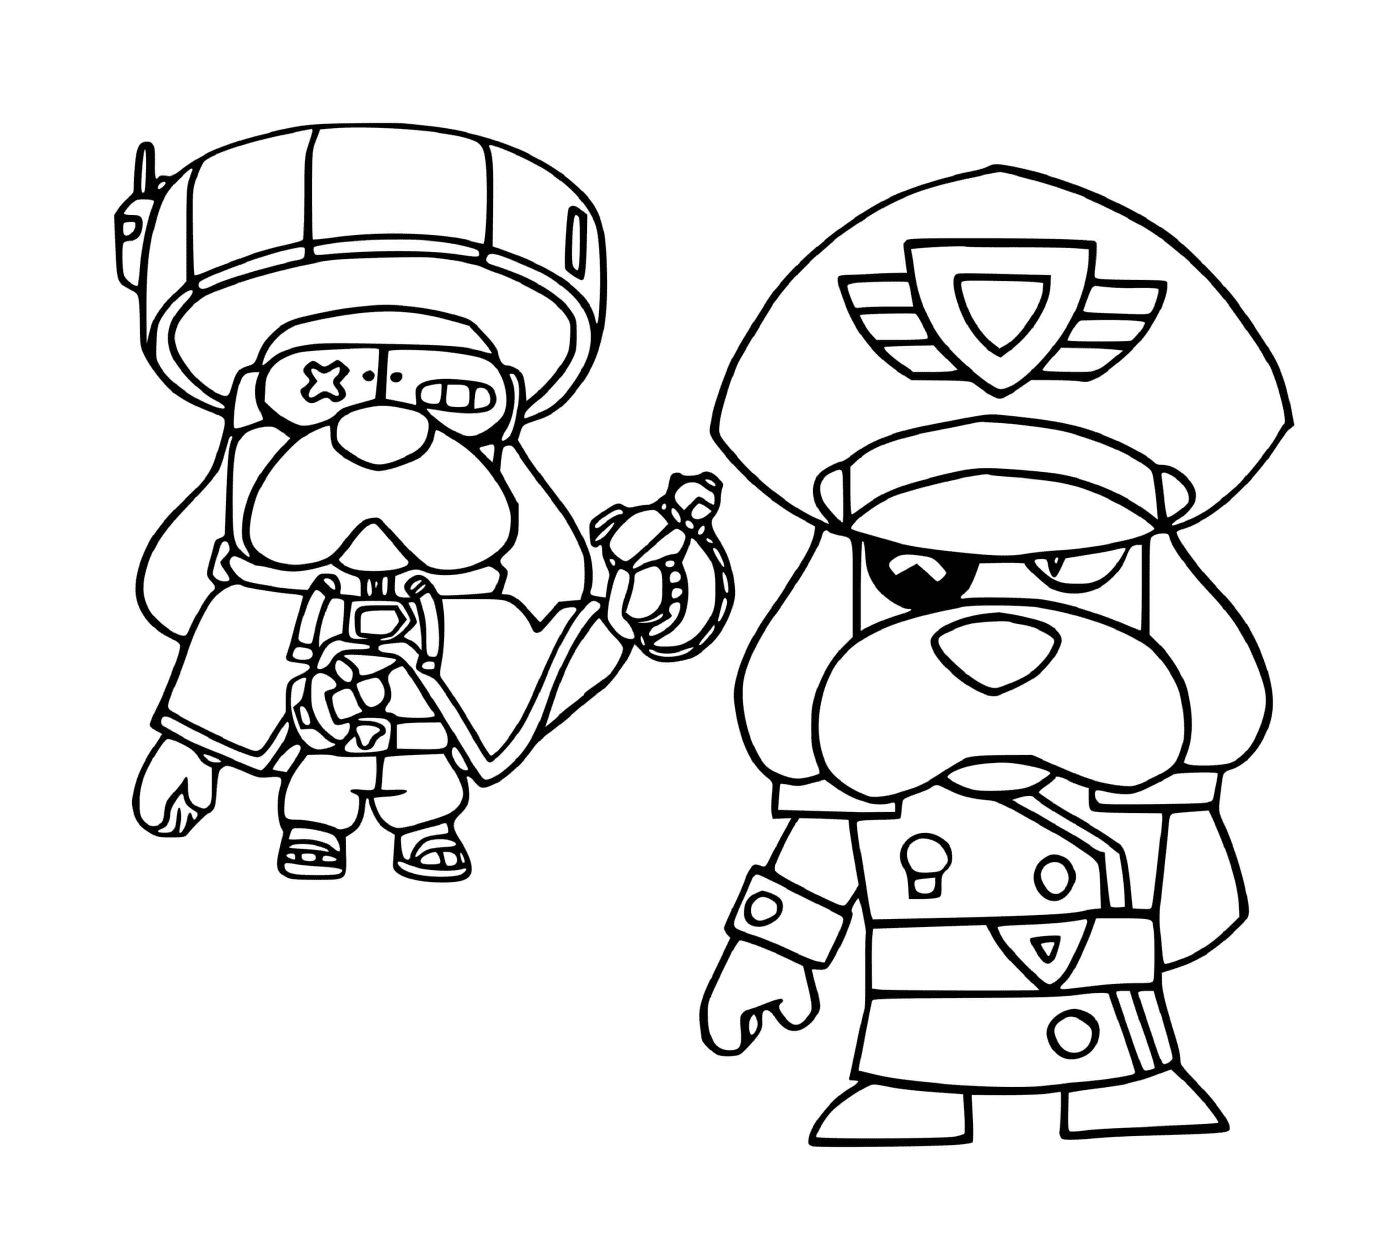  Dois personagens animados prontos para lutar! 